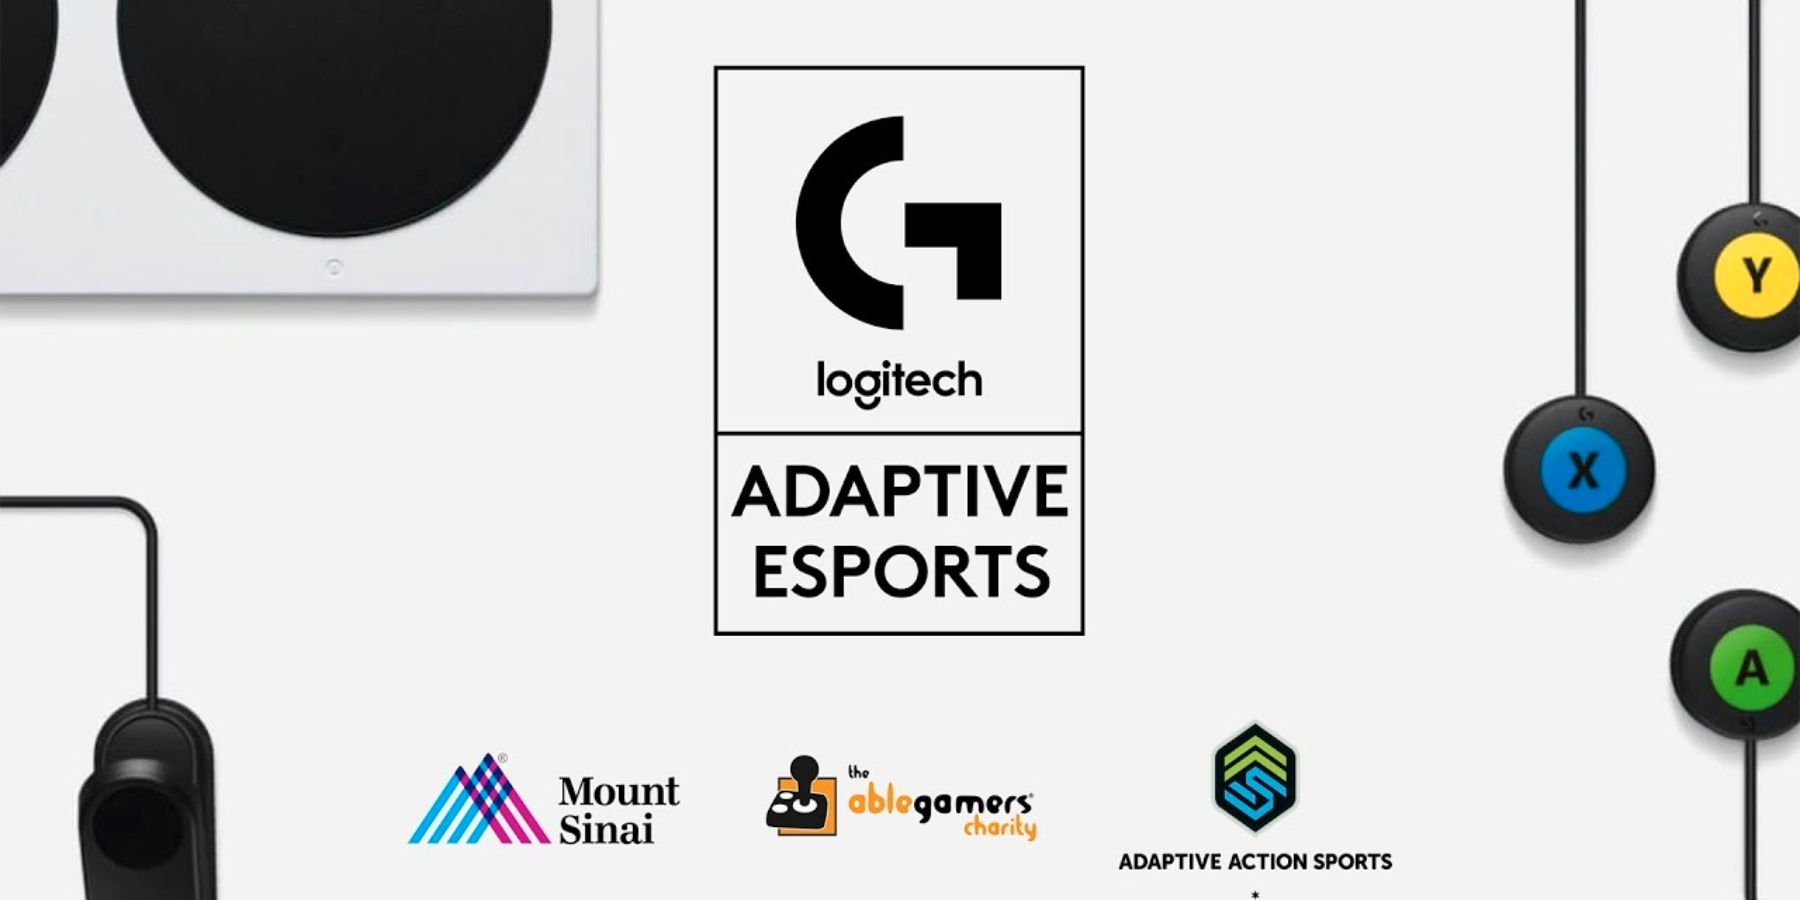 Logitech G är värd för adaptiv esport-tävling för spelare med funktionshinder